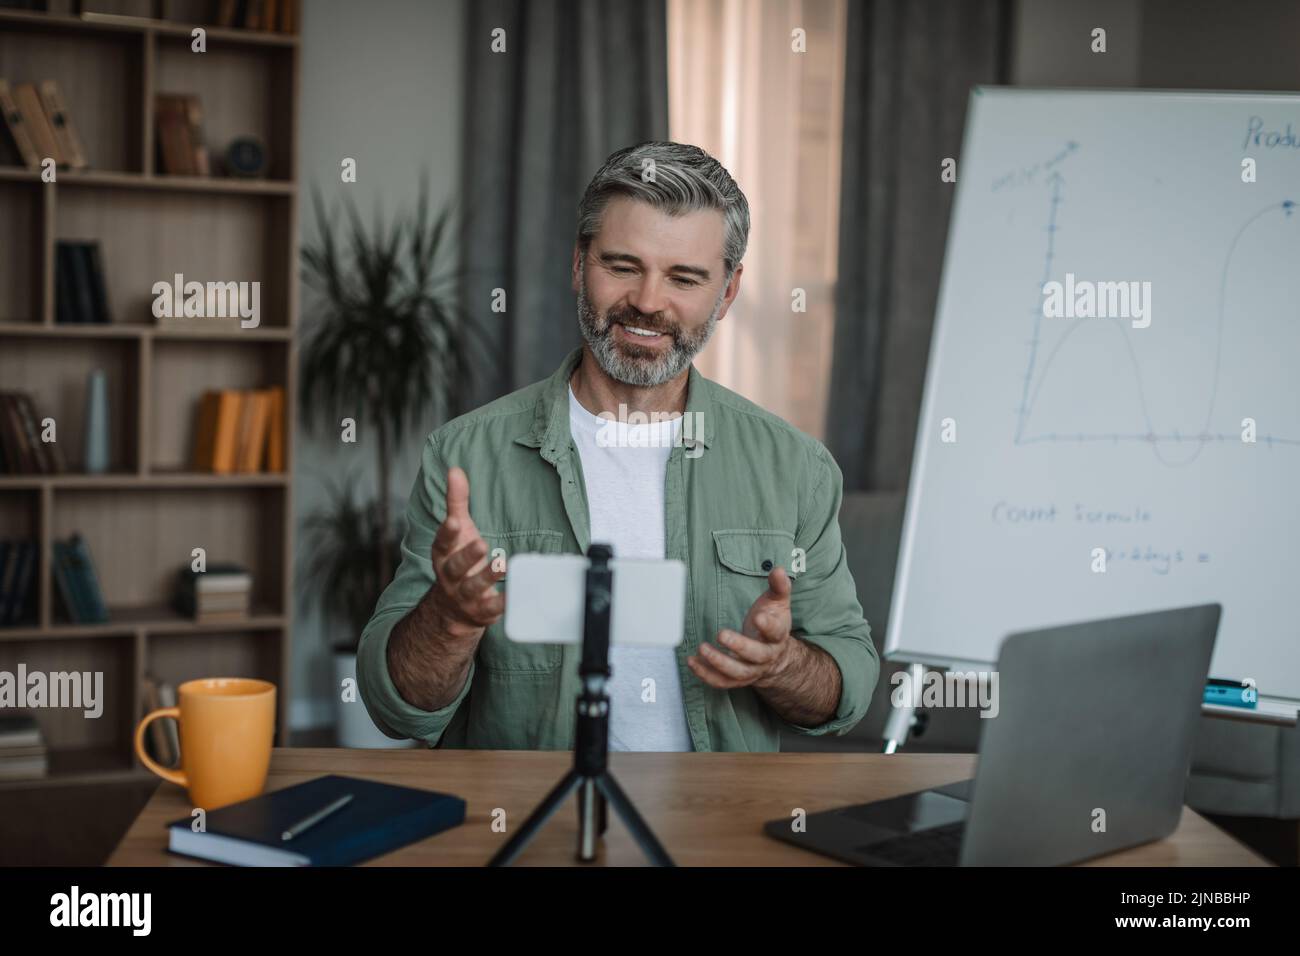 Alegre hombre europeo retirado con profesor de barba que da una lección de vídeo con un smartphone en el interior de la habitación Foto de stock